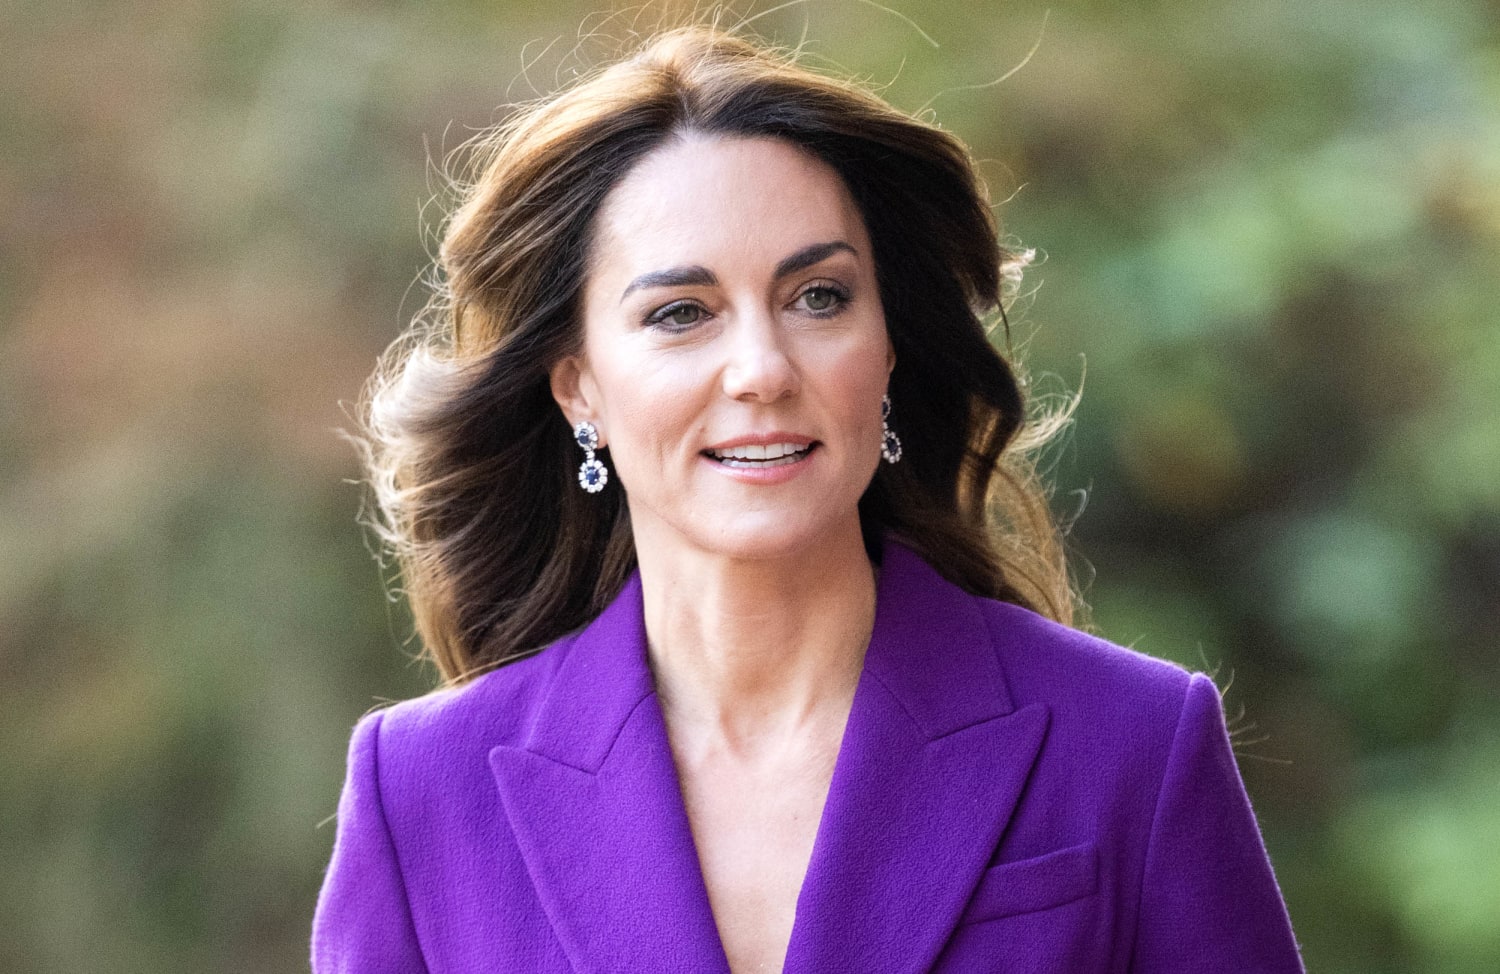 Αισιοδοξία για την Kate Middleton  – Ο οργανισμός της ανταποκρίνεται στη θεραπεία